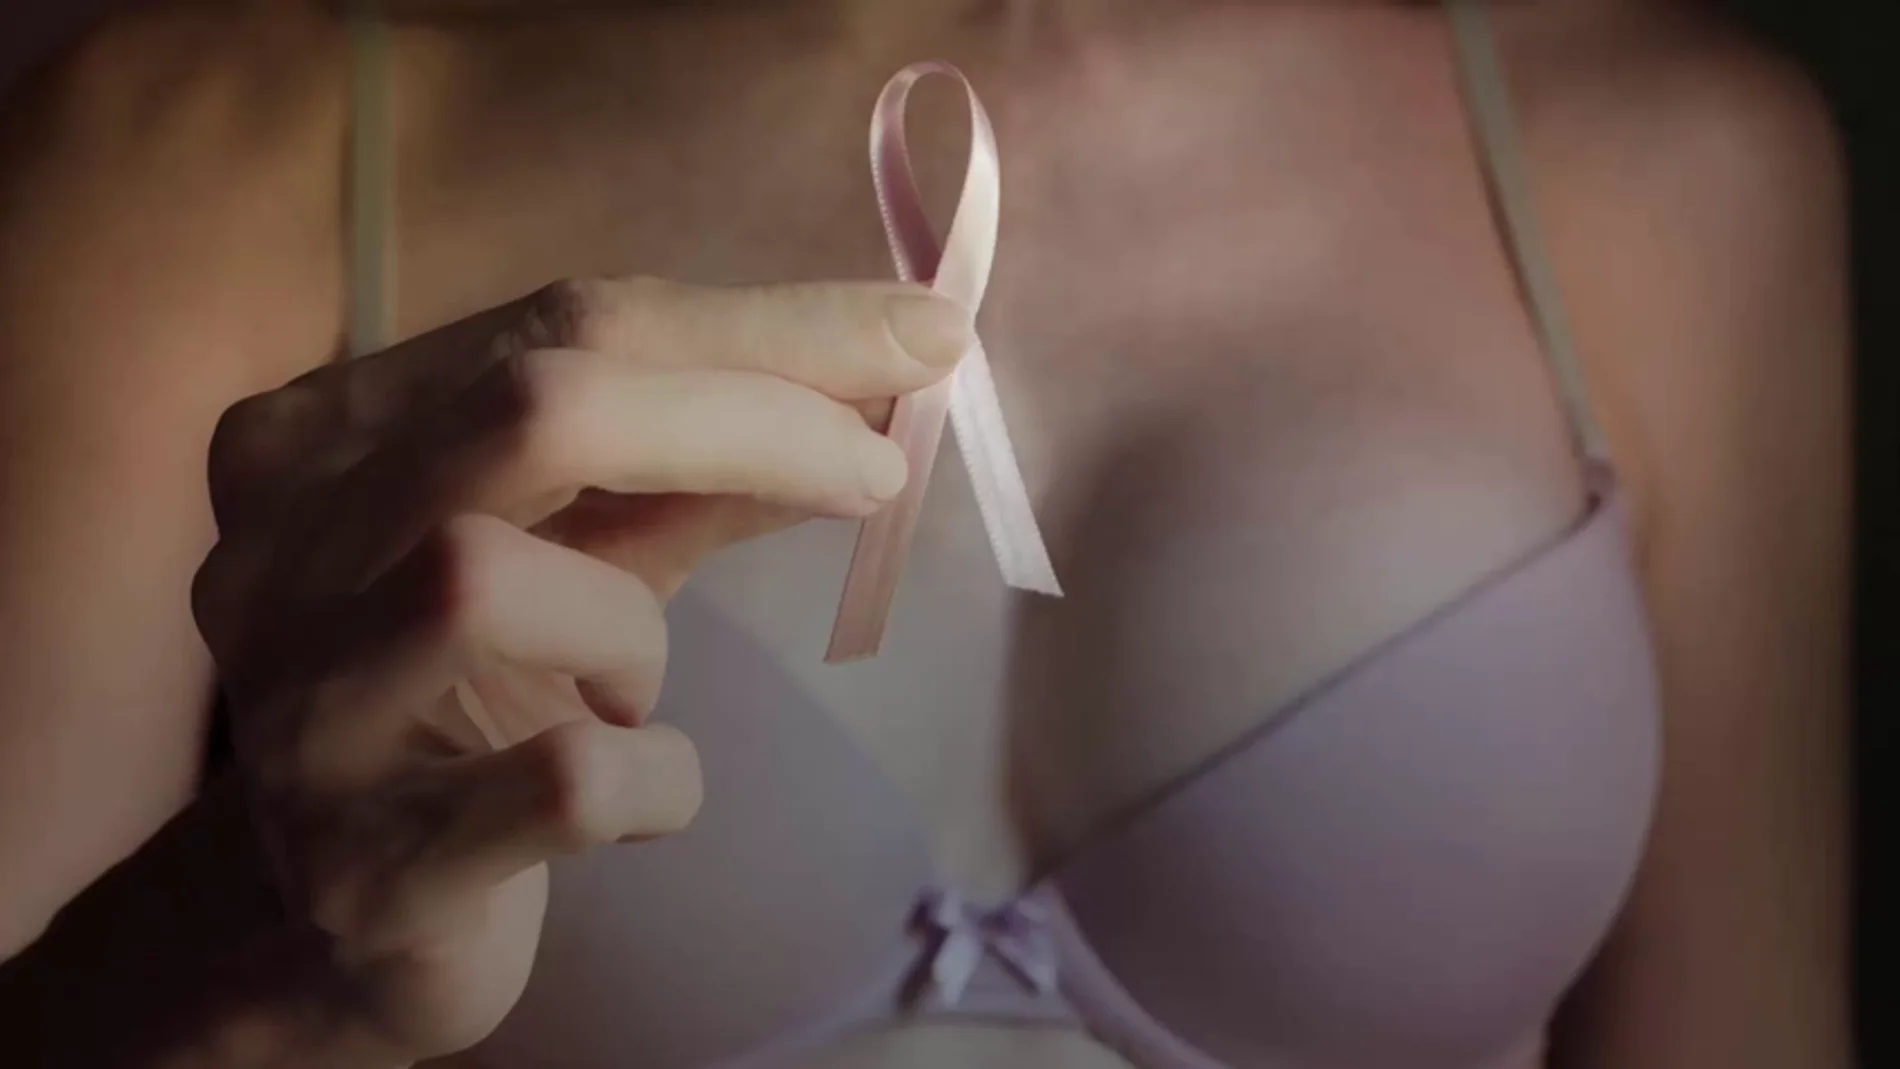 Cáncer de mama: cómo hacer una autoexploración mamaria paso a paso